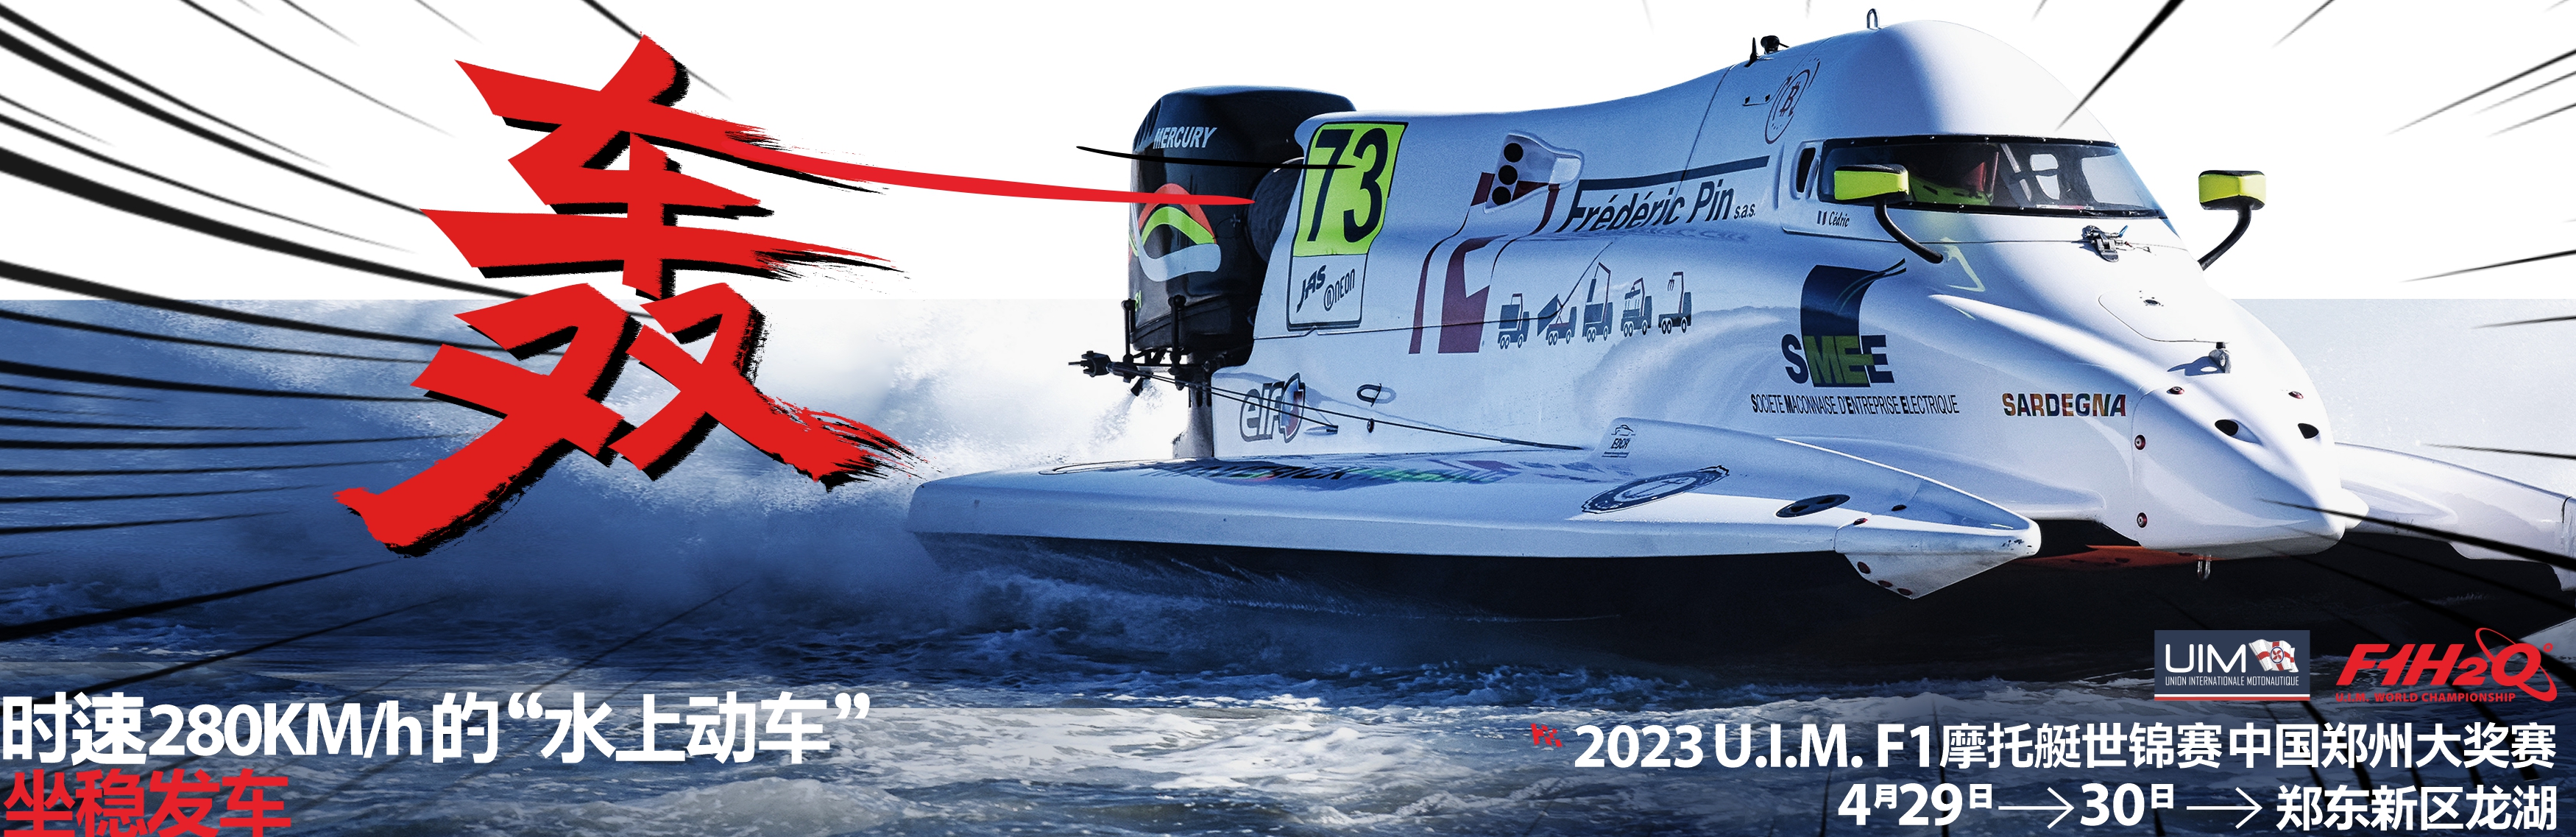 中国首站 百余国家和地区赛事转播 2023U.I.M. F1摩托艇世界锦标赛牵手绿城